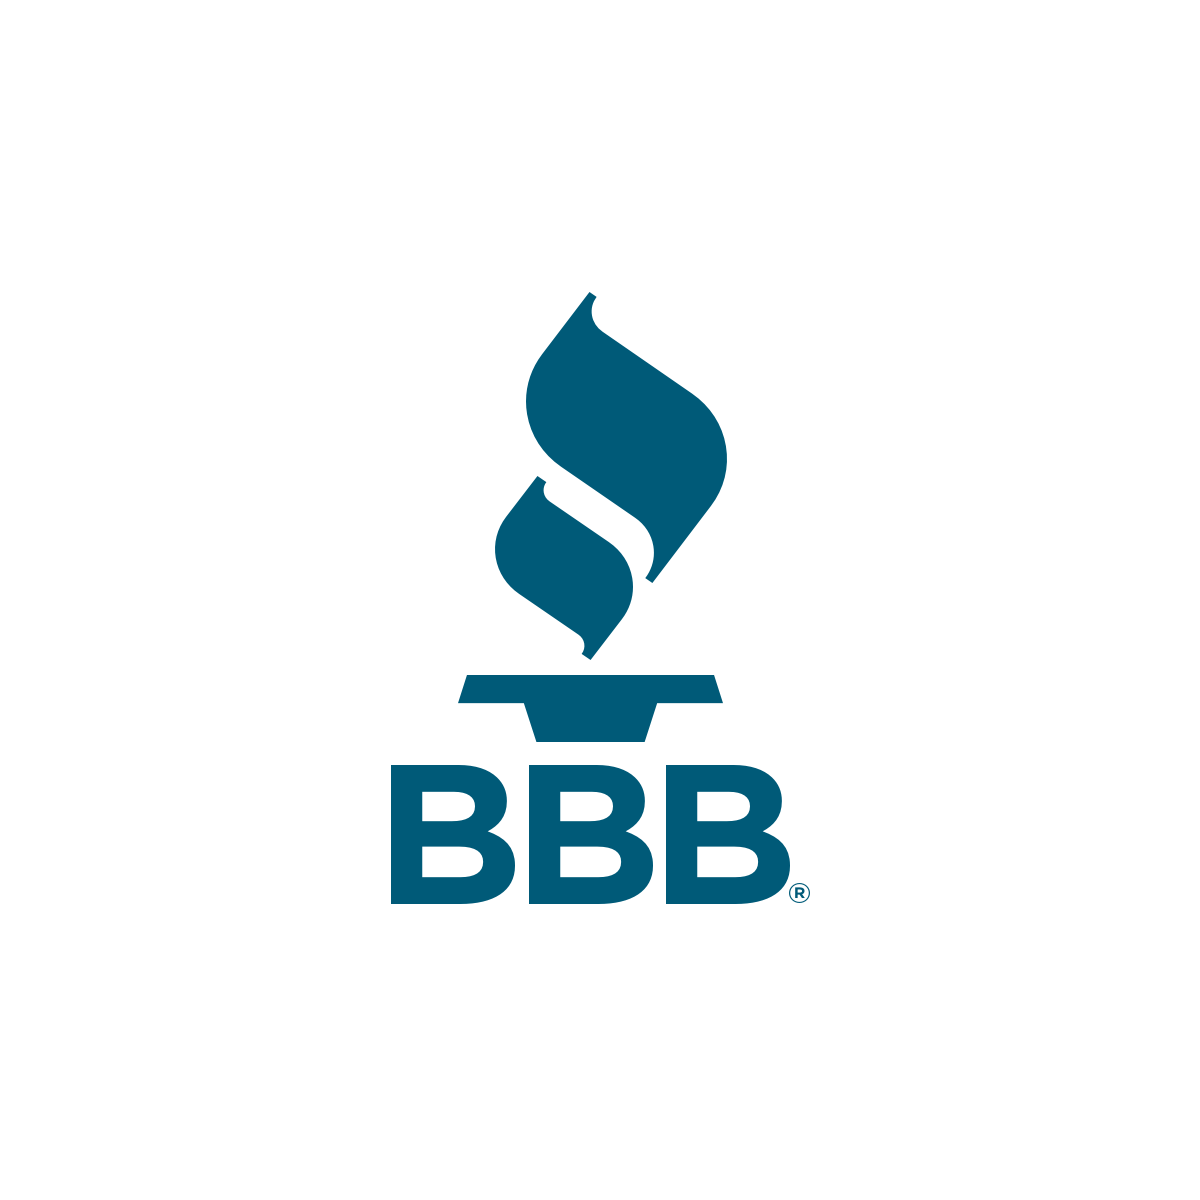 Procuração BBB (Better Business Bureau)